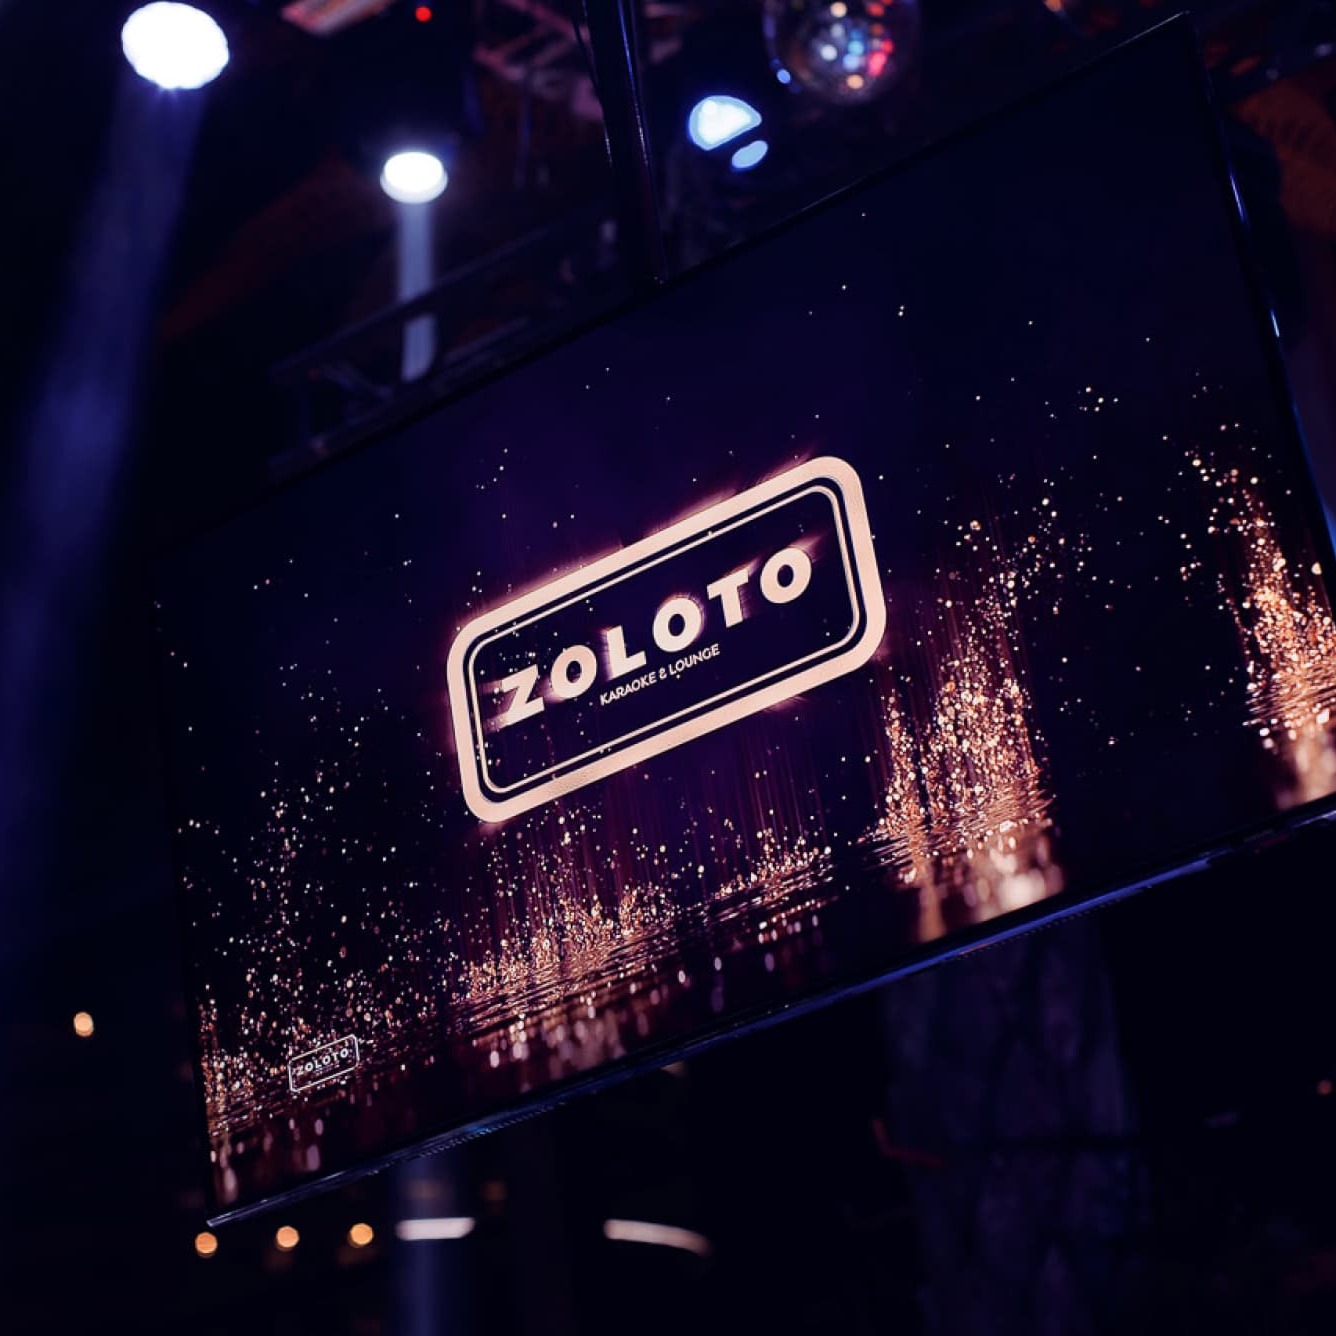 Zoloto Karaoke and Lounge